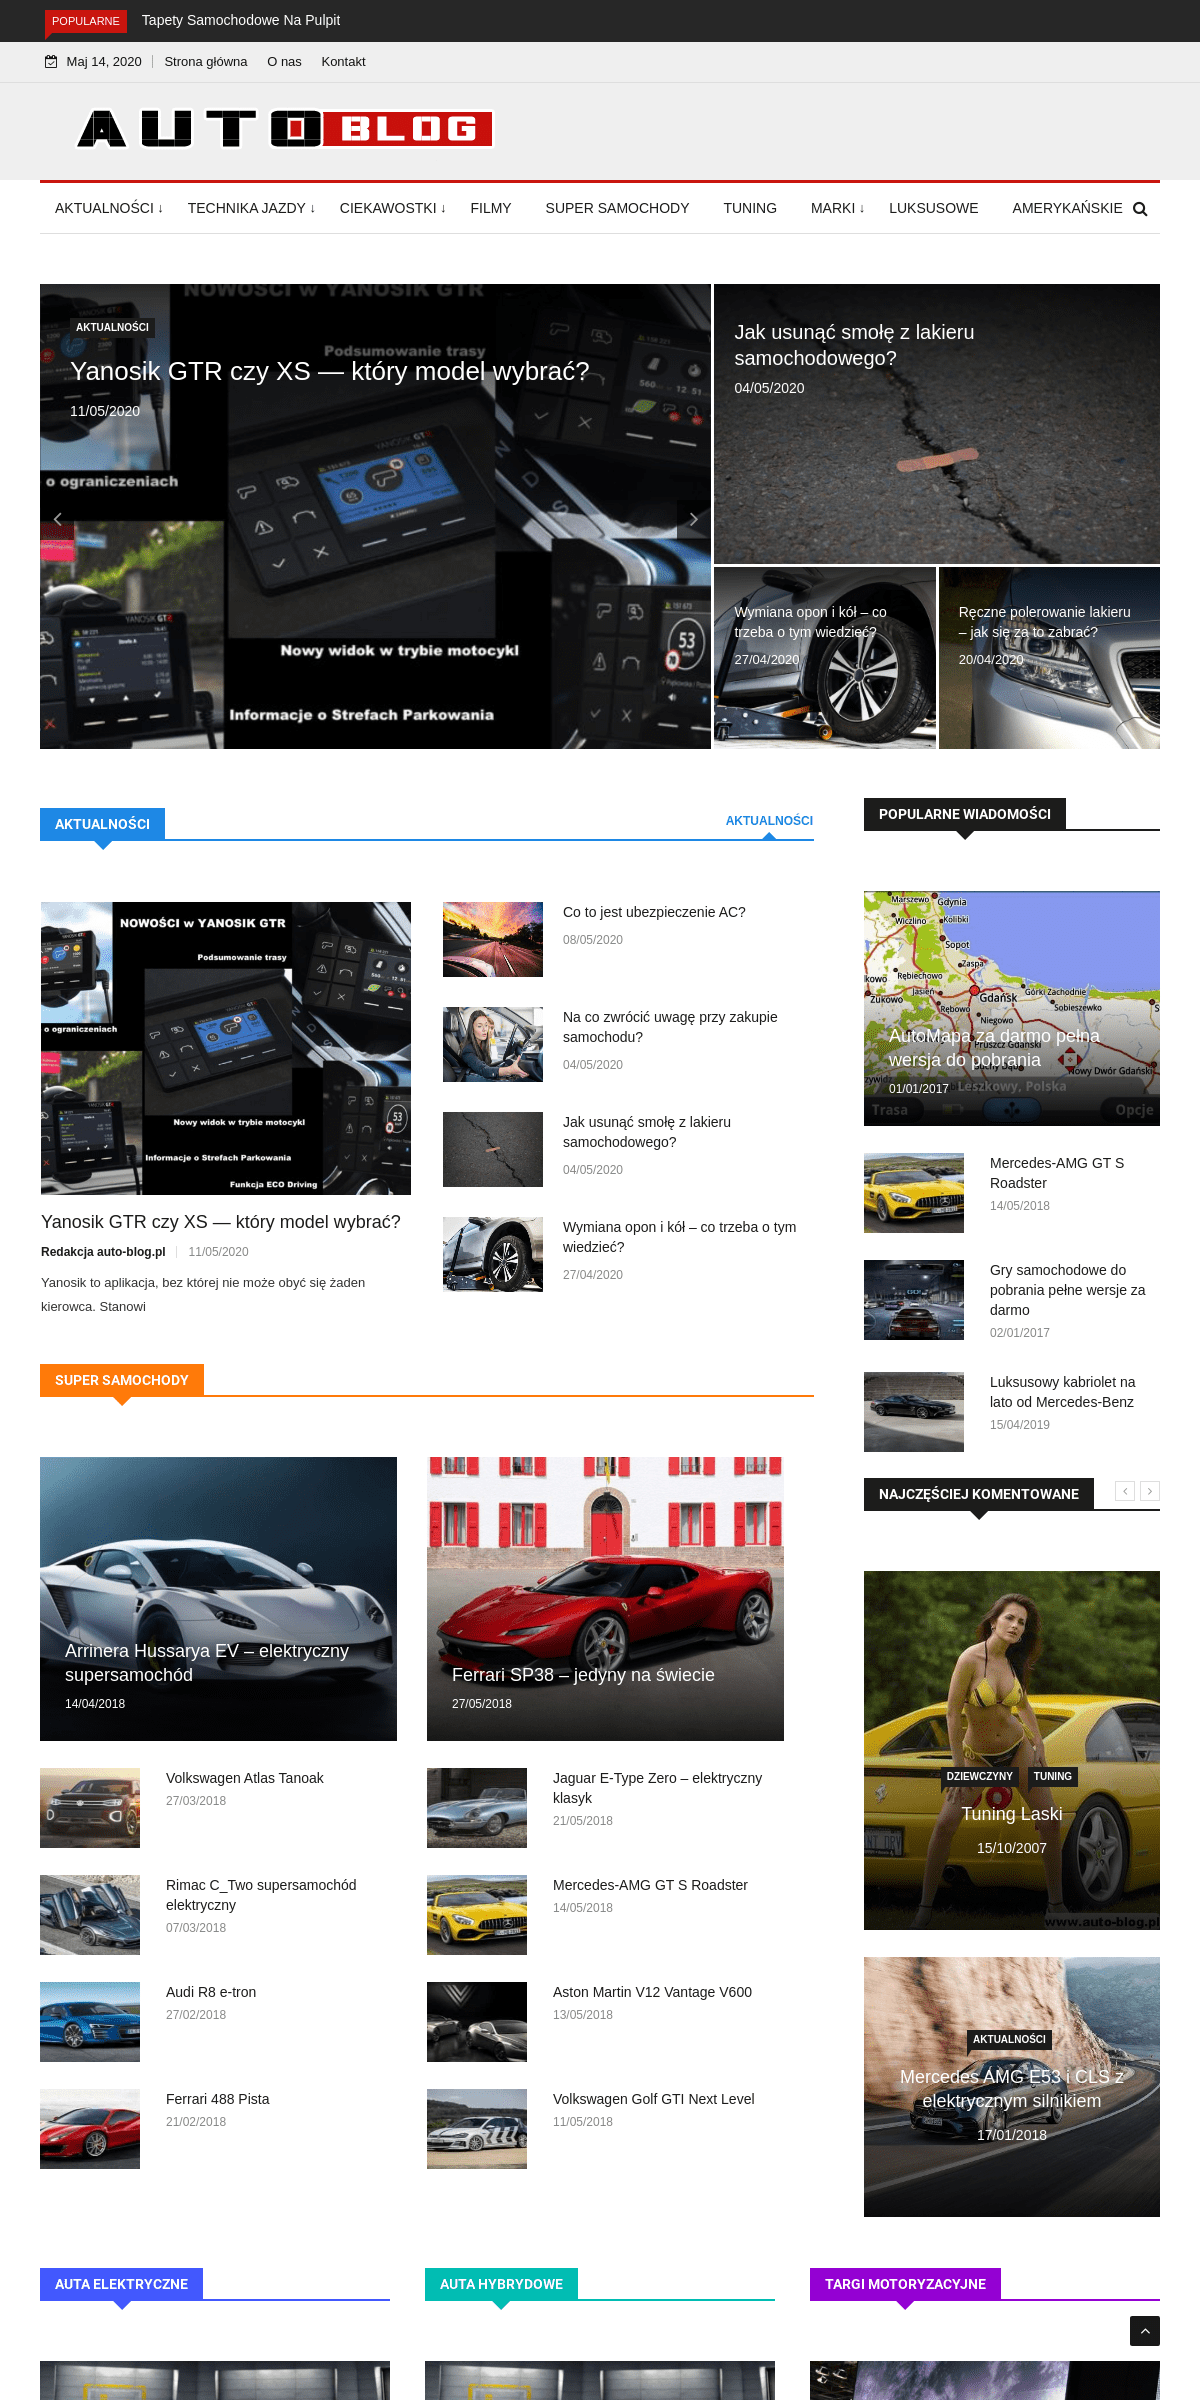 Auto-Blog - Motoryzacja - Samochody - Testy - Technika Jazdy.